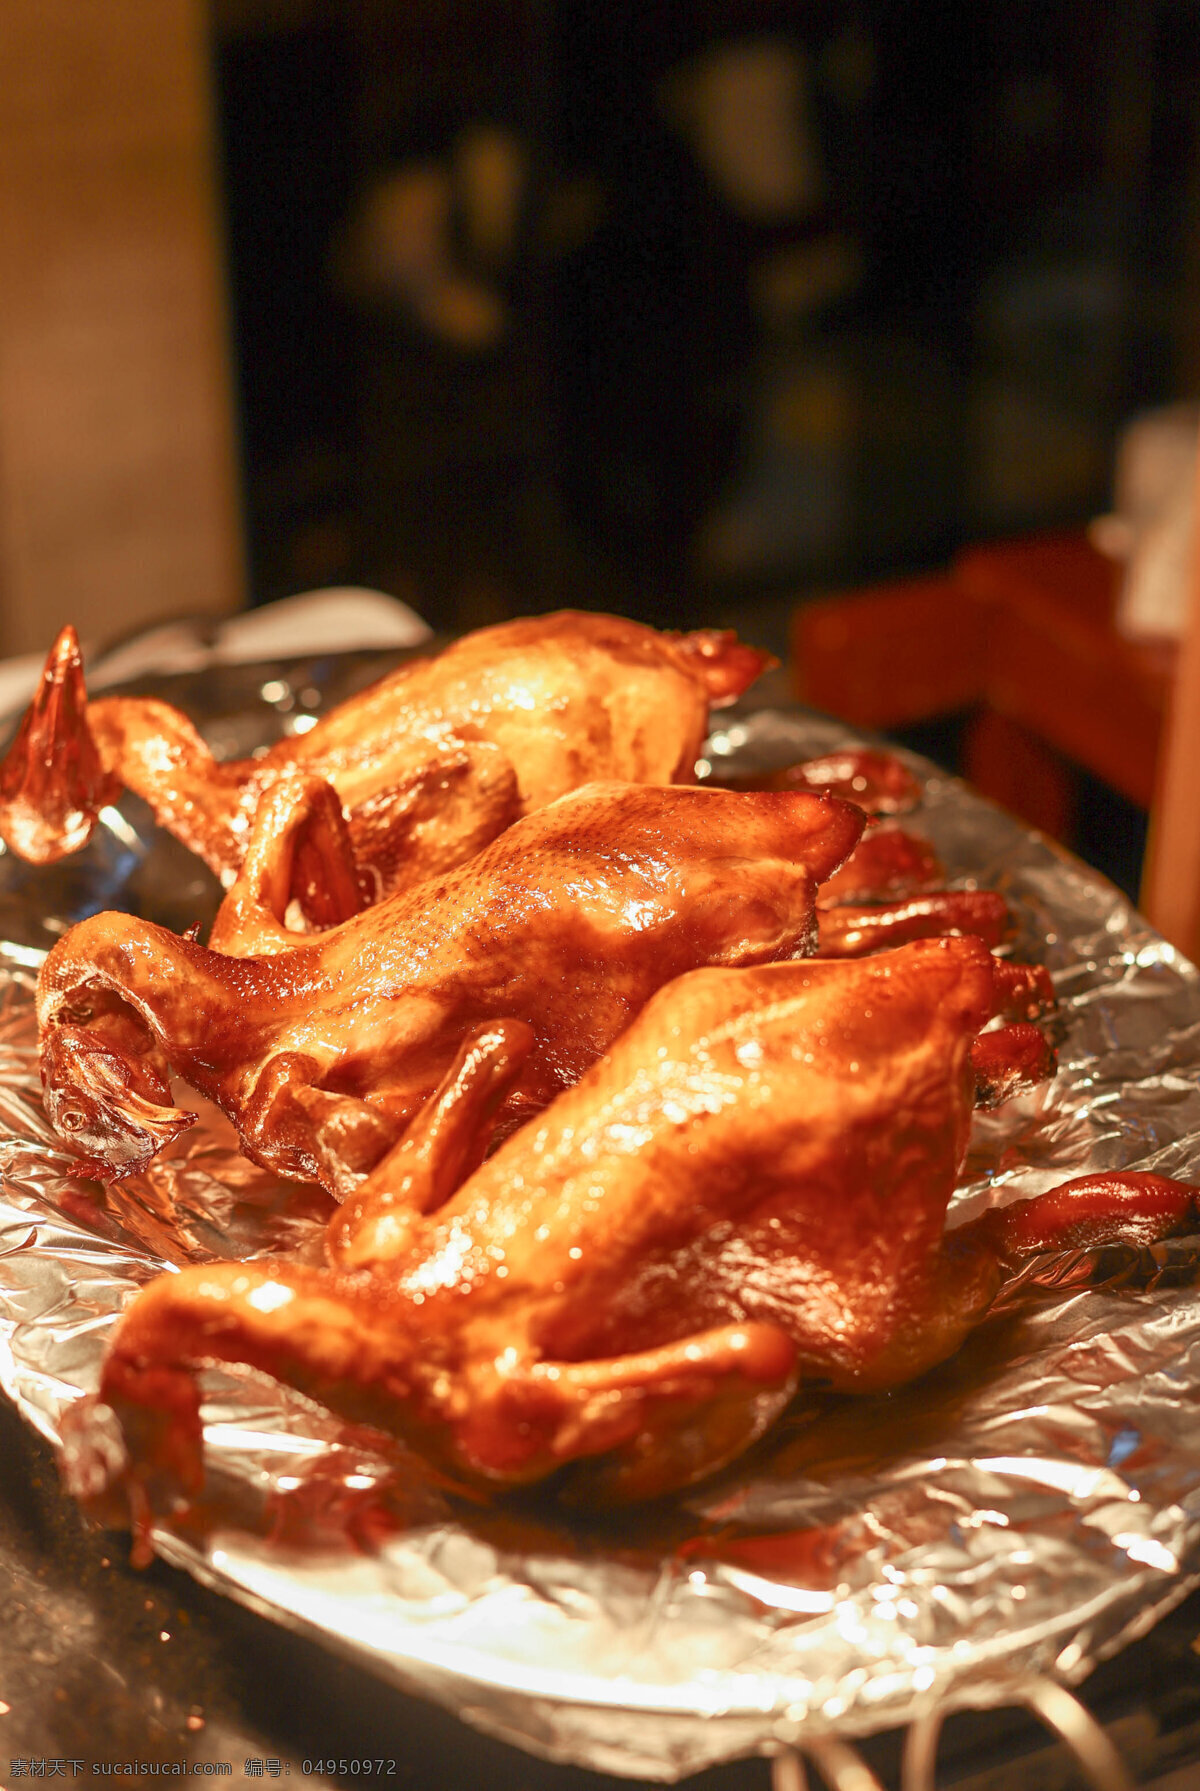 烤鸡 烧烤 美食 鸡翅 整只鸡 卤味 餐饮美食 传统美食